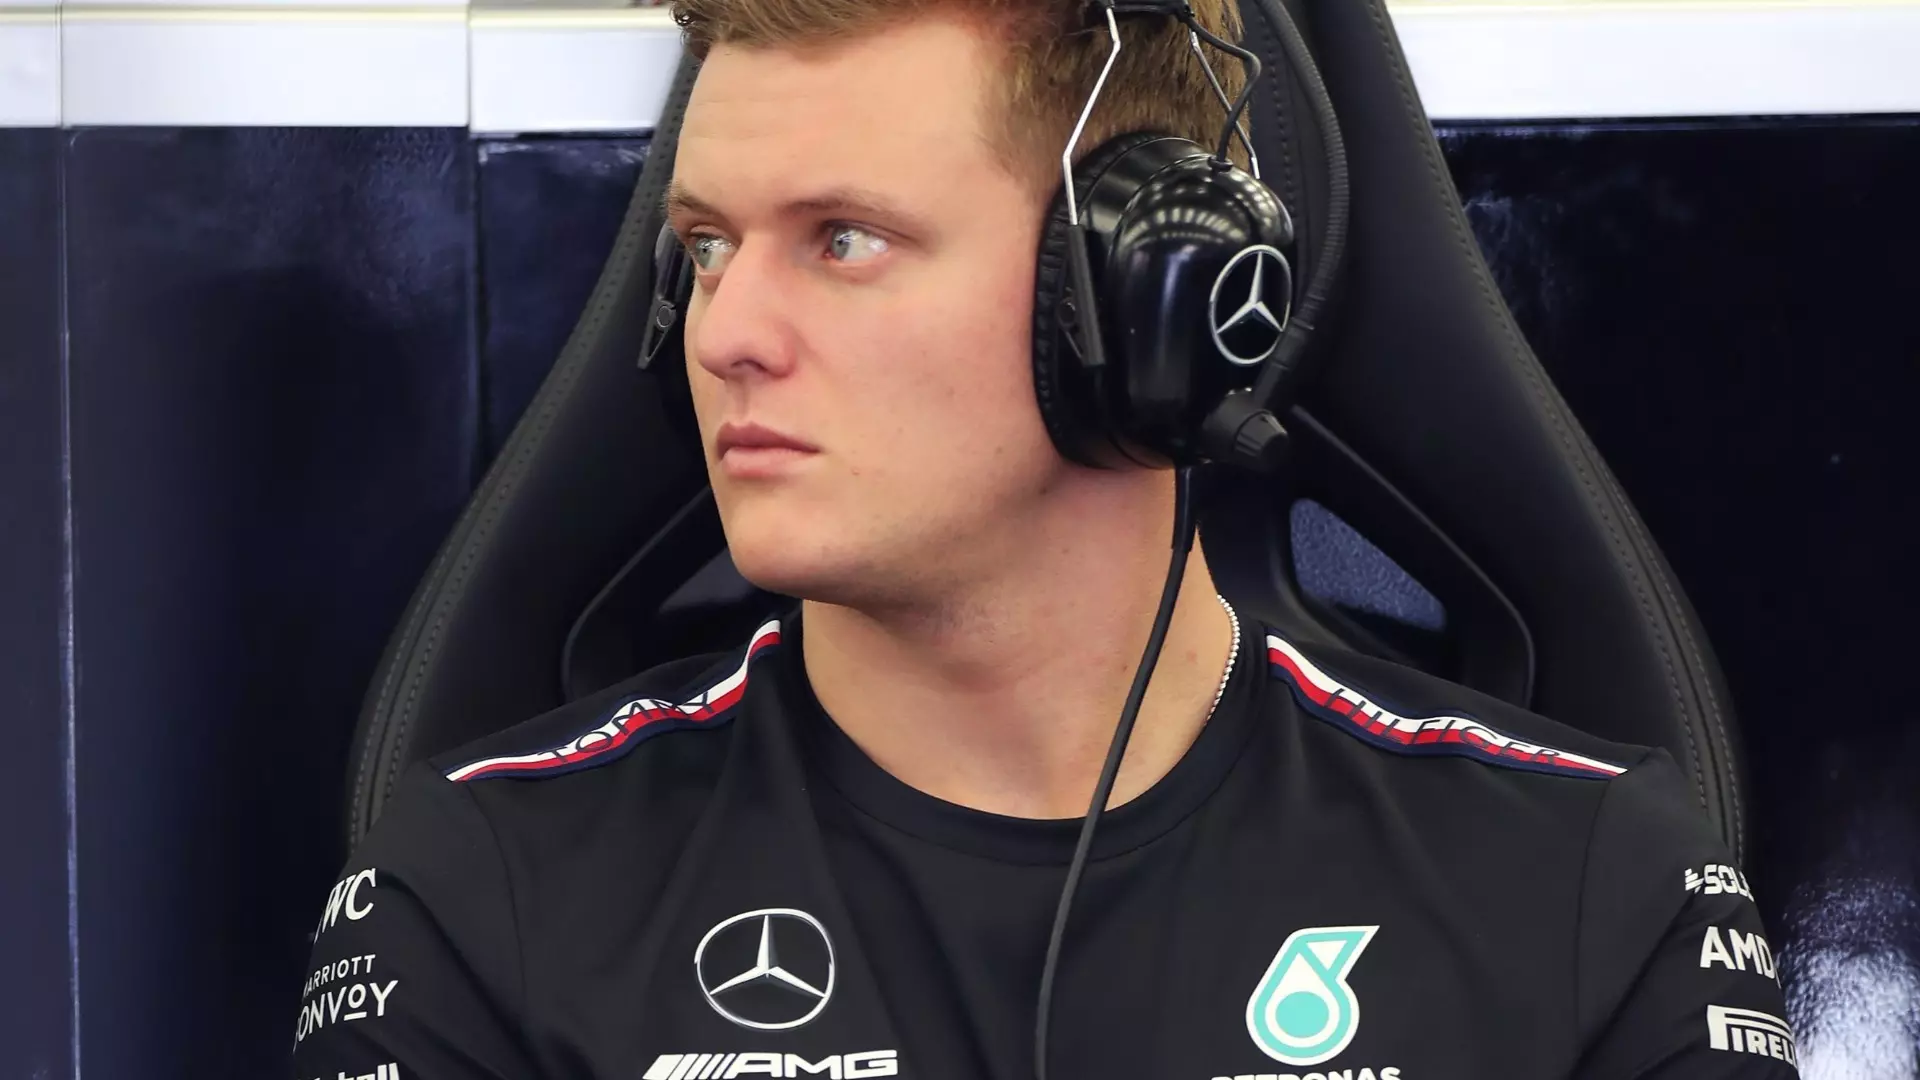 F1, Mick Schumacher: rumors sul futuro team